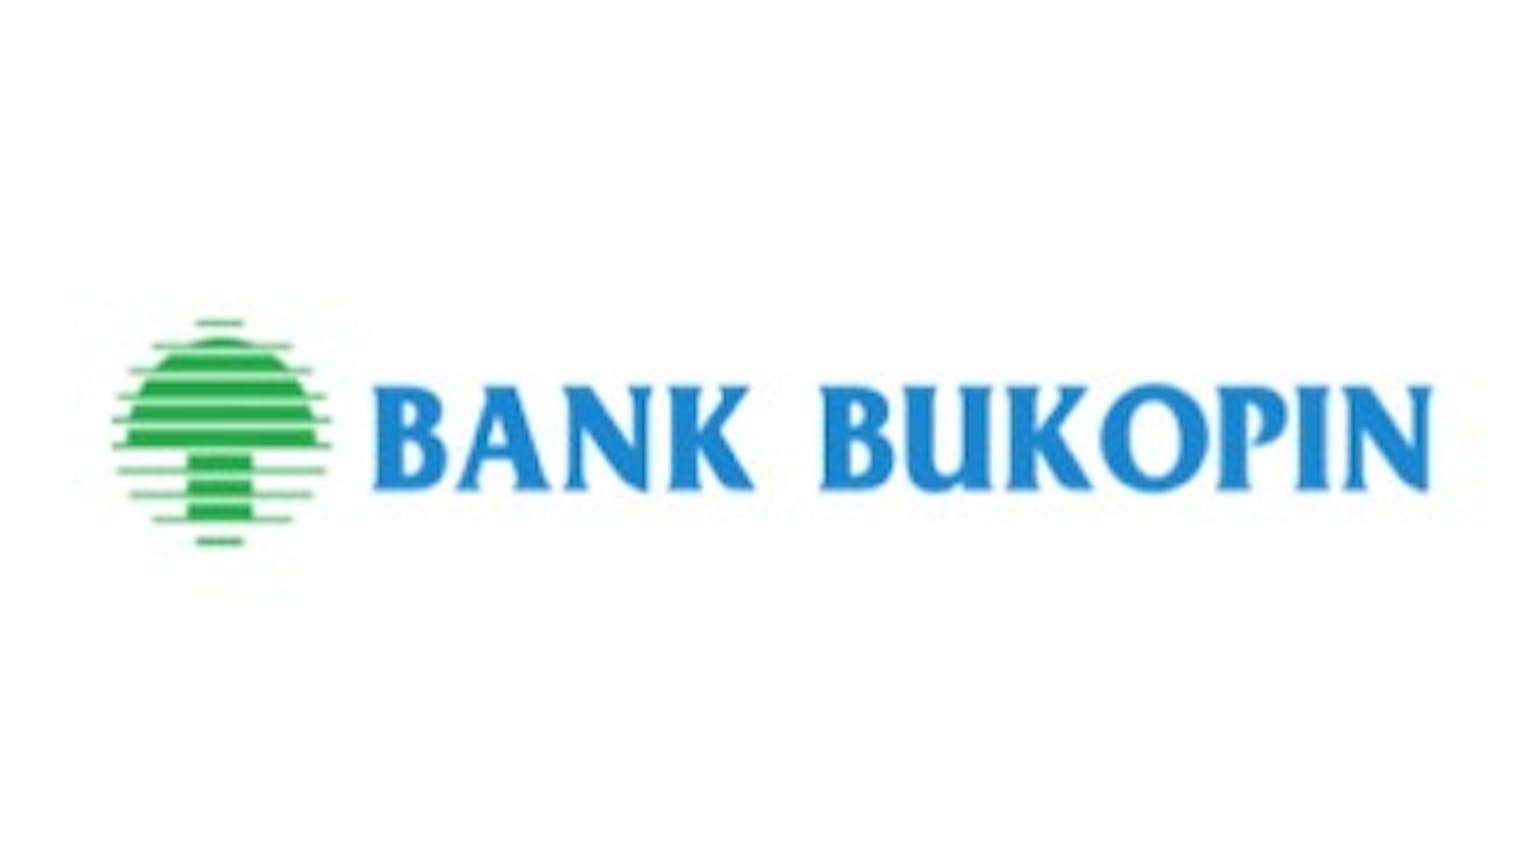 Bank Bukopin
